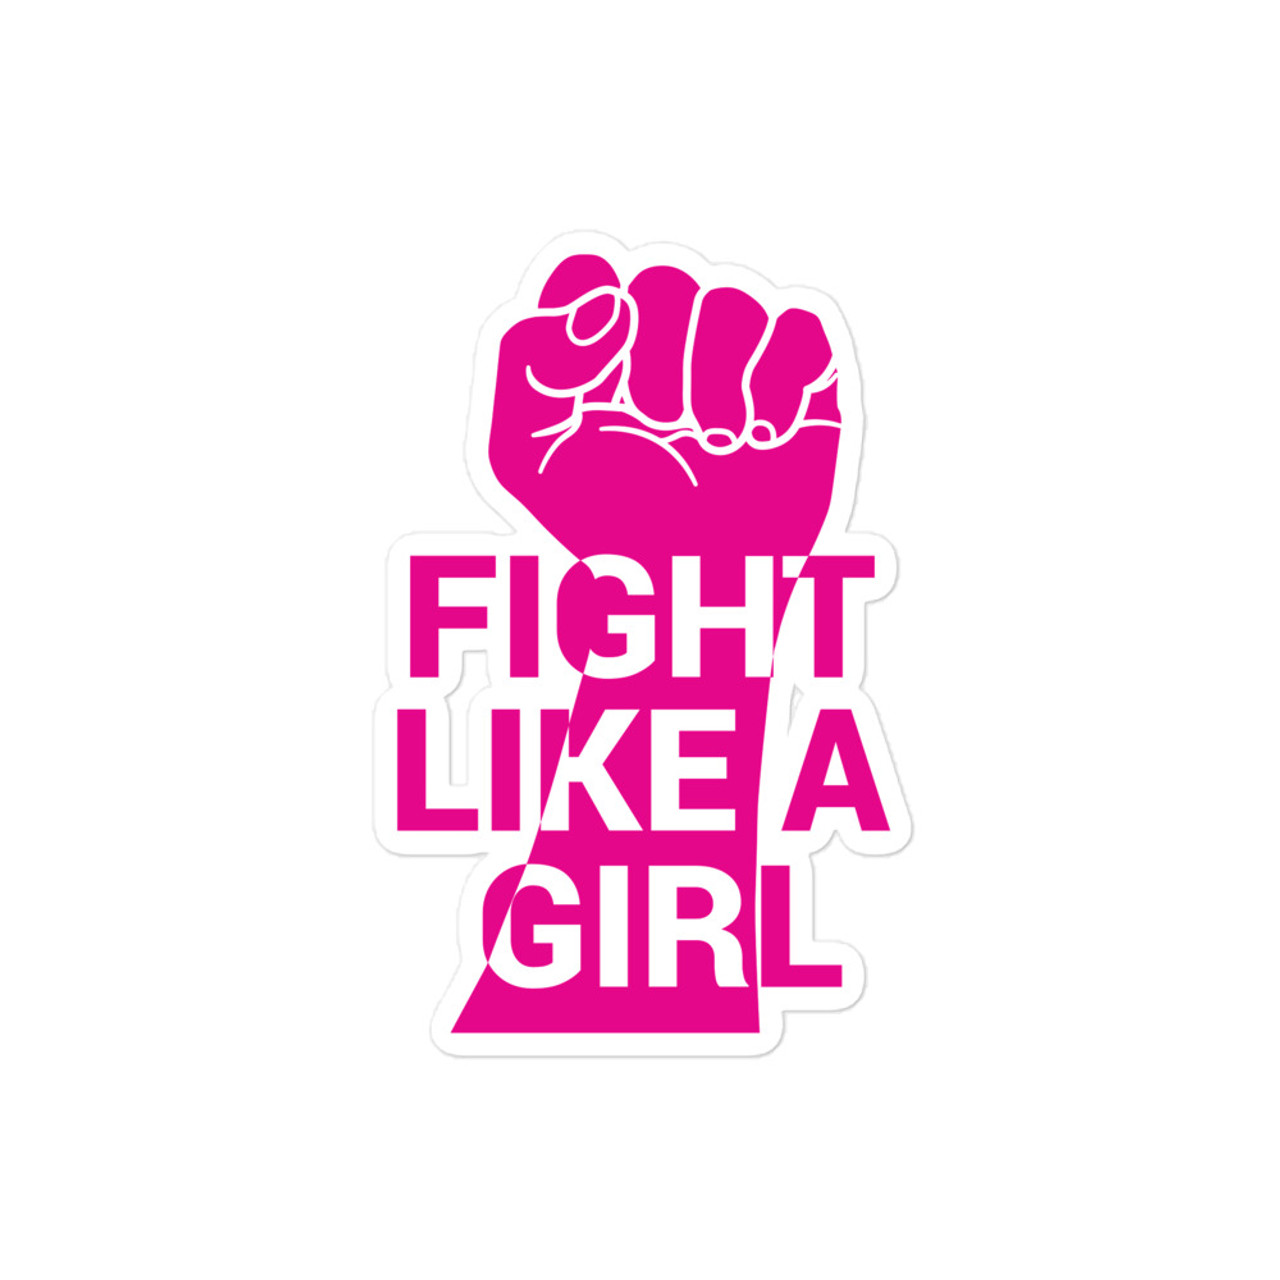 Fight Like a Girl Bubble-free sticker - Meach's Military Memorabilia & More